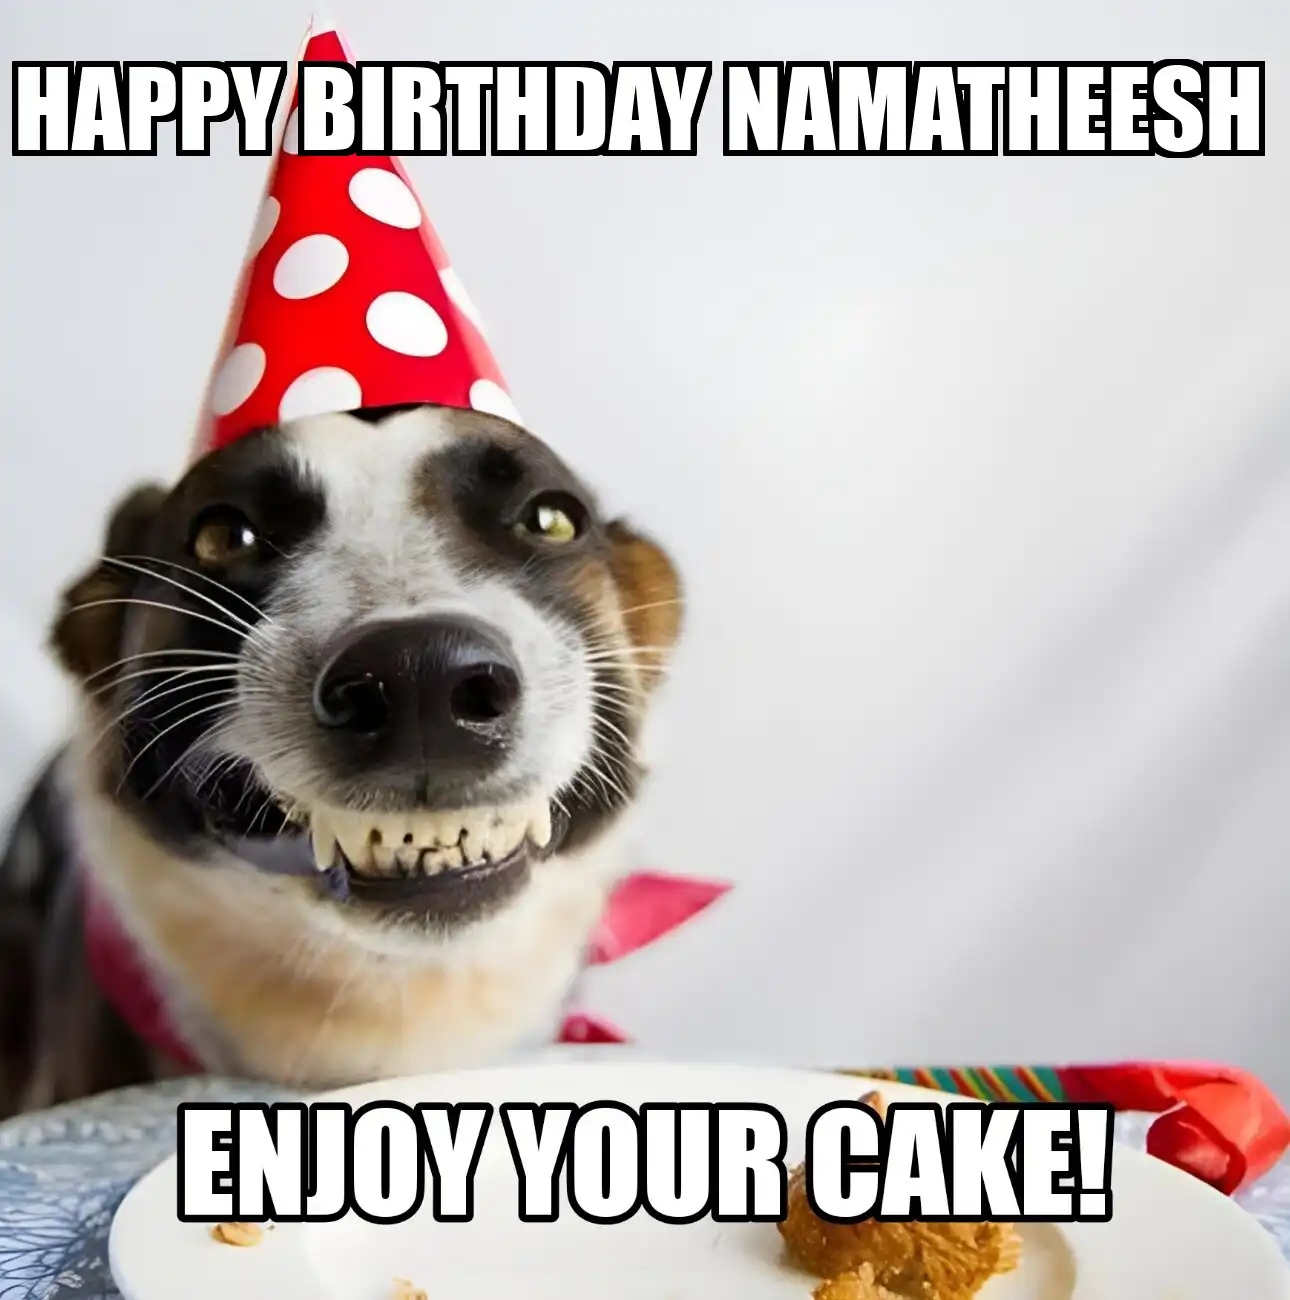 Happy Birthday Namatheesh Enjoy Your Cake Dog Meme